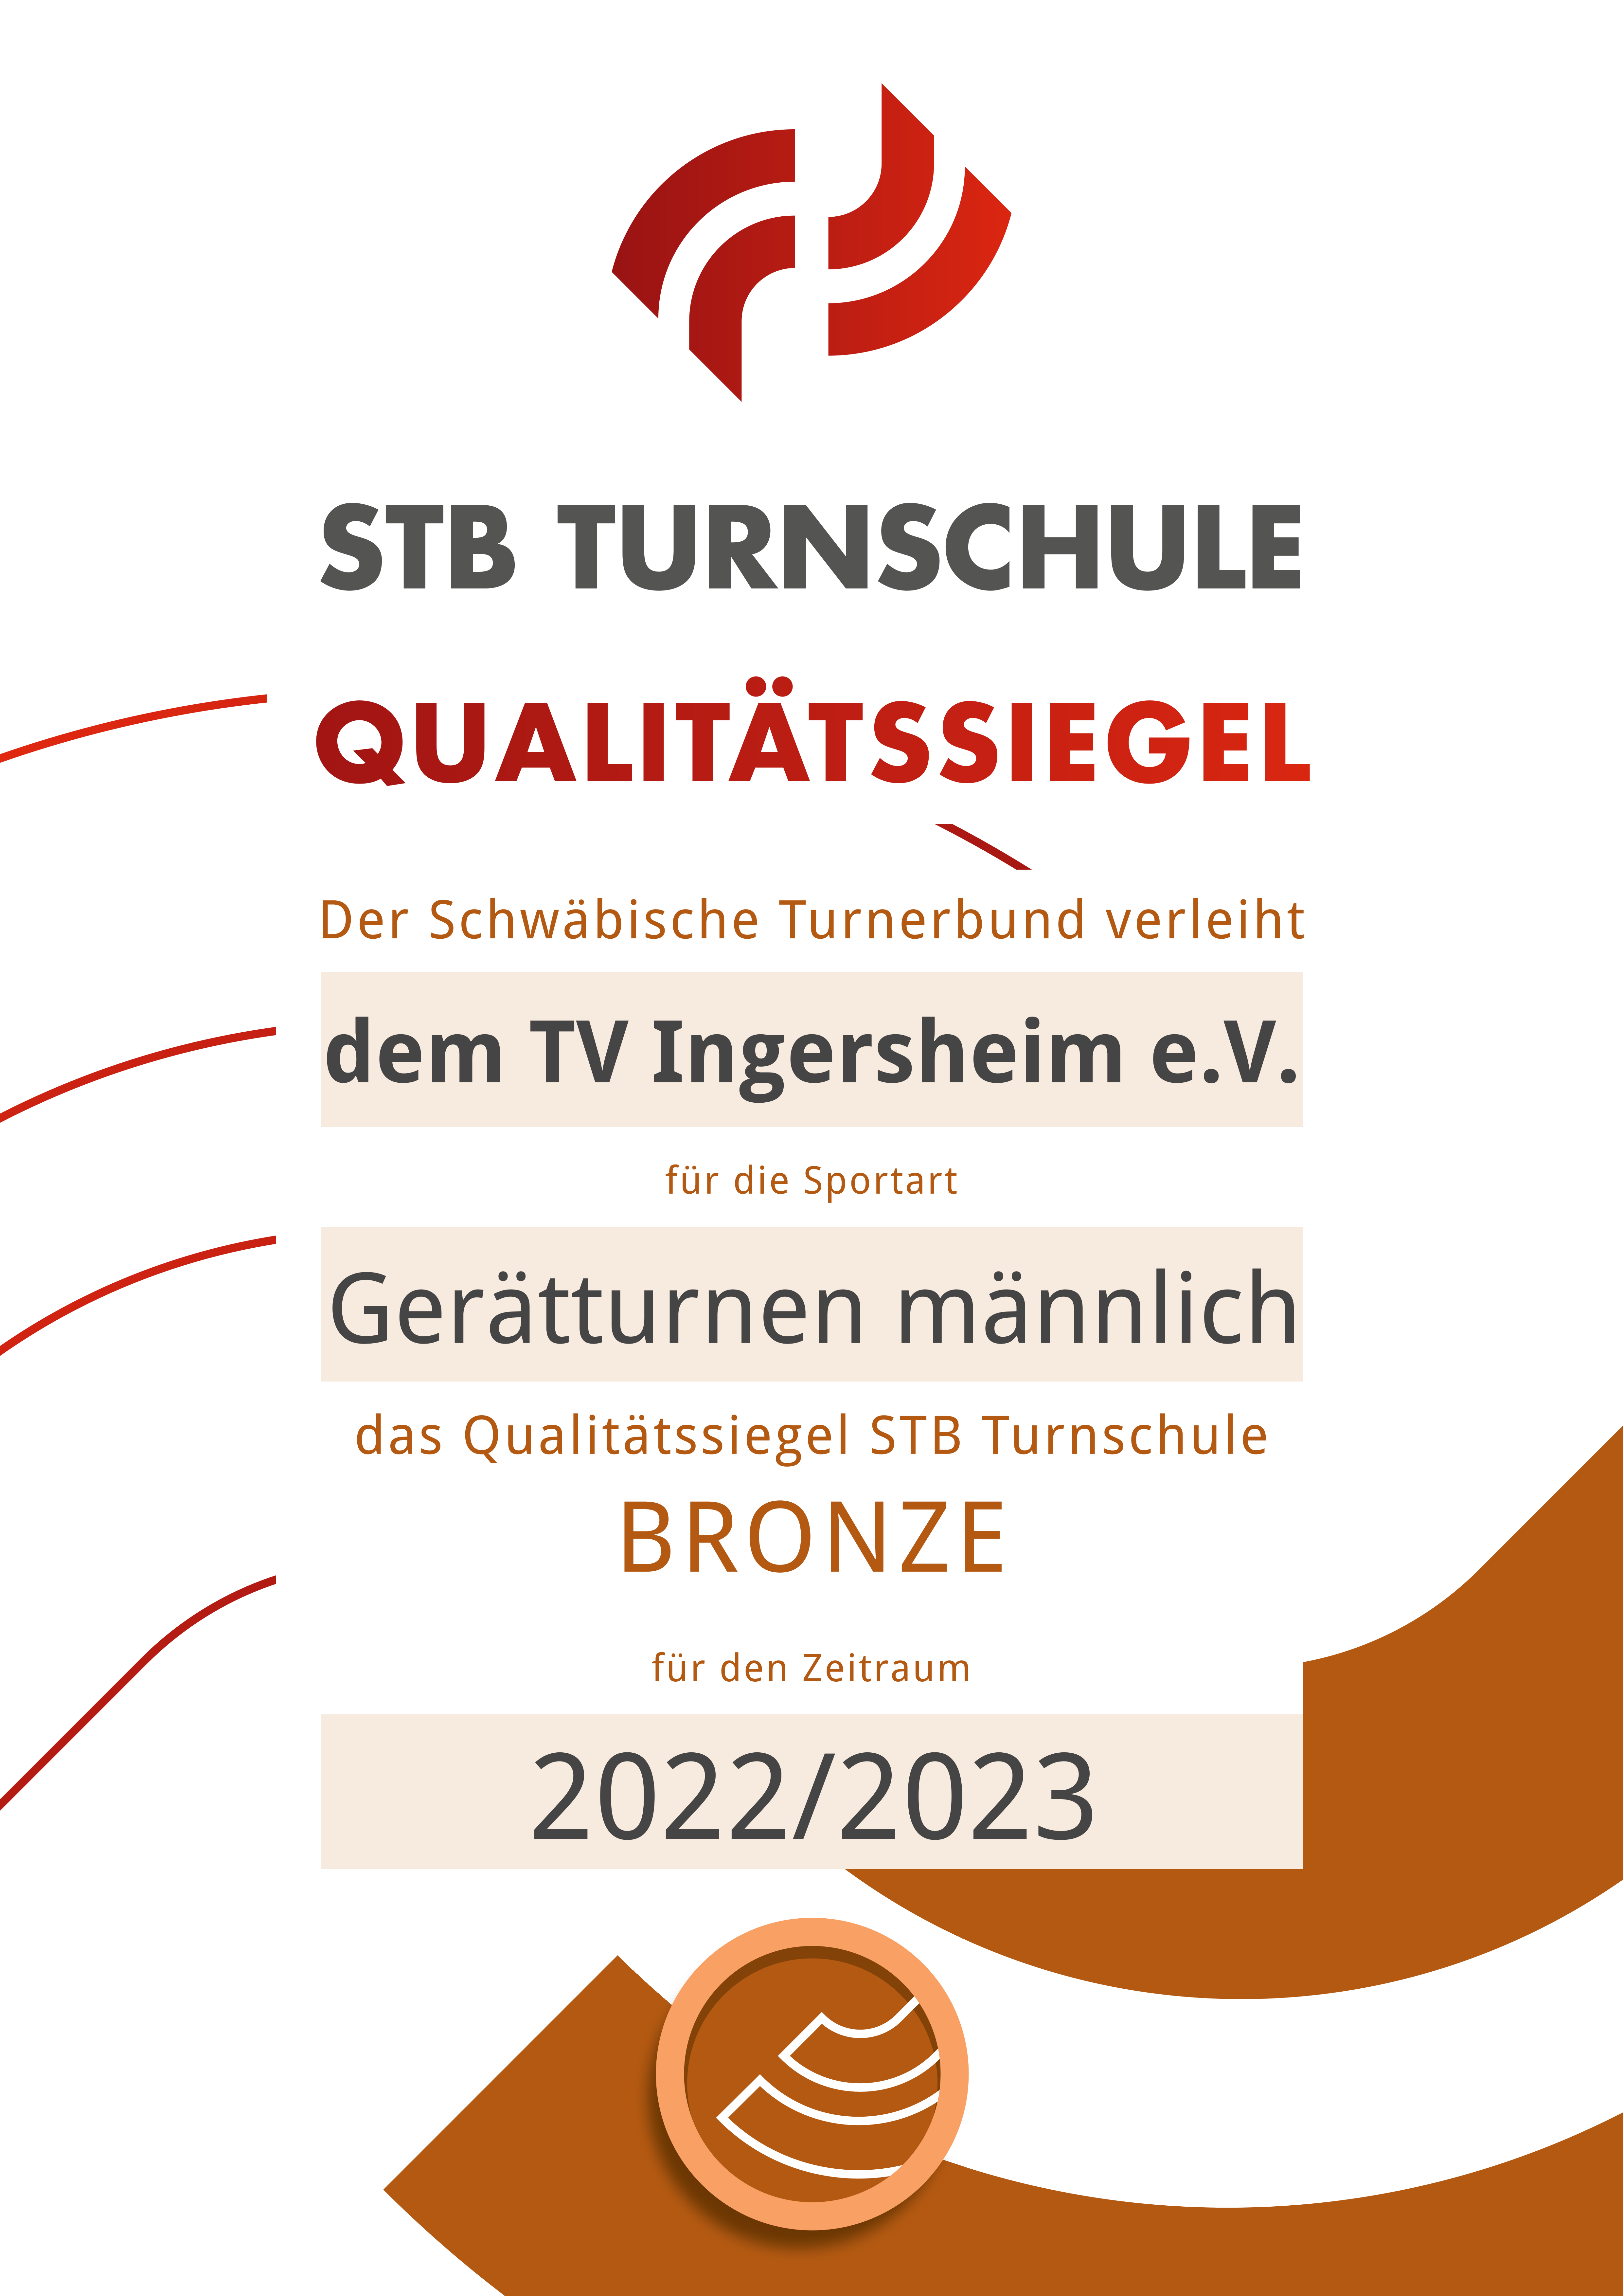 STB Turnschule Qualitätssiegel Bronze TVI männlich 22 23